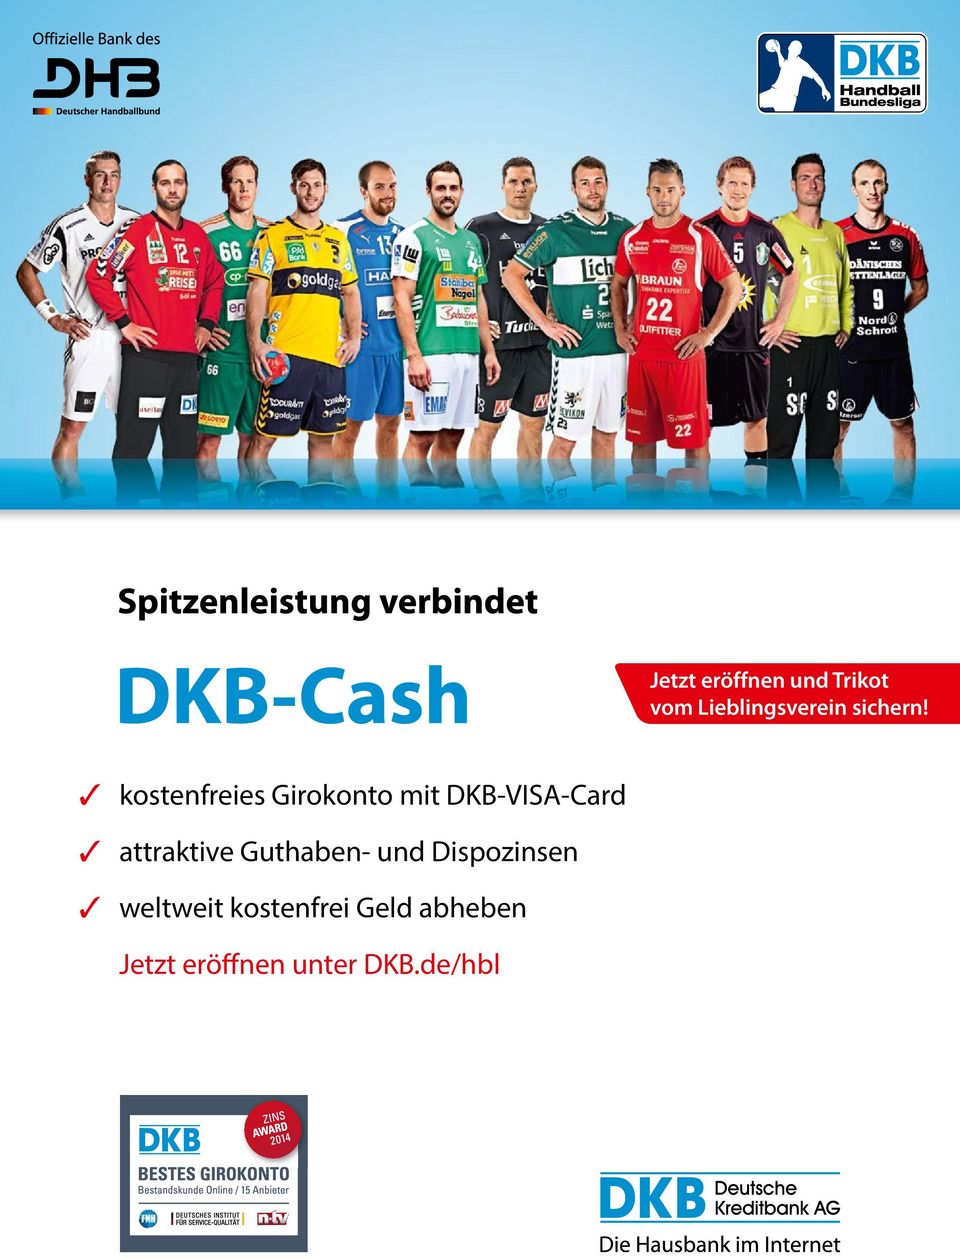 kostenfreies Girokonto mit DKB-VISA-Card